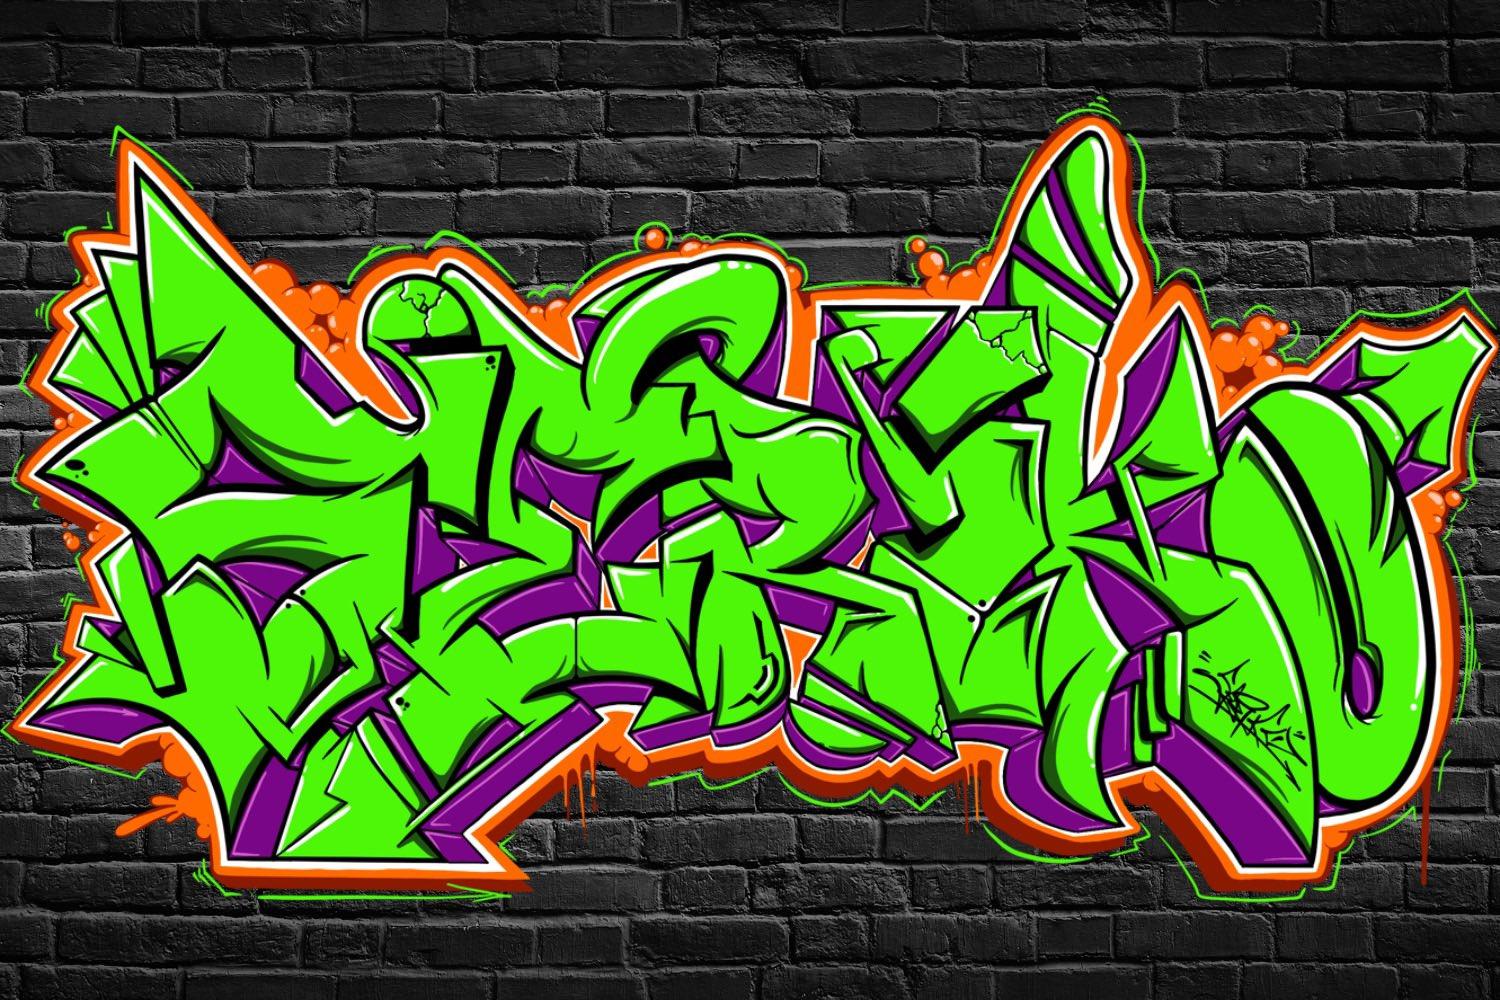 SERiKO-Graffiti 横幅